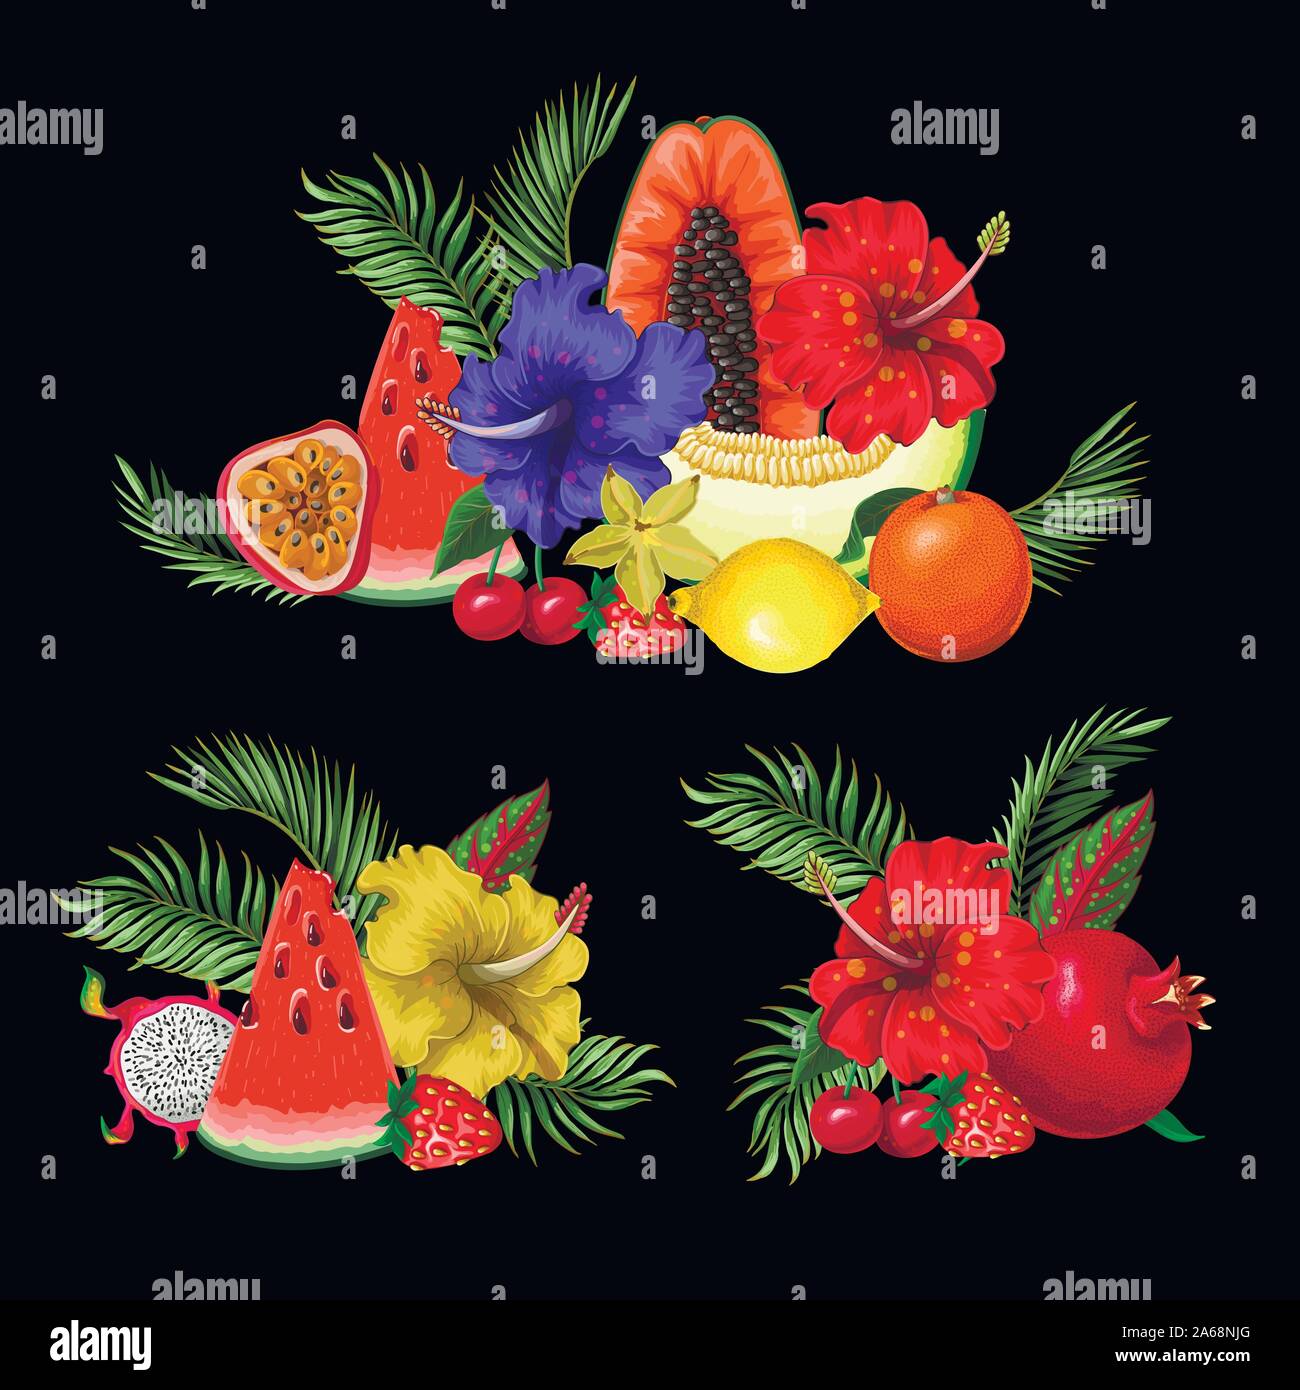 Exotische Früchte Blumensträuße isoliert. Orangen, Papaya, Drachenfrucht. Wassermelone, Erdbeere und andere Stock Vektor